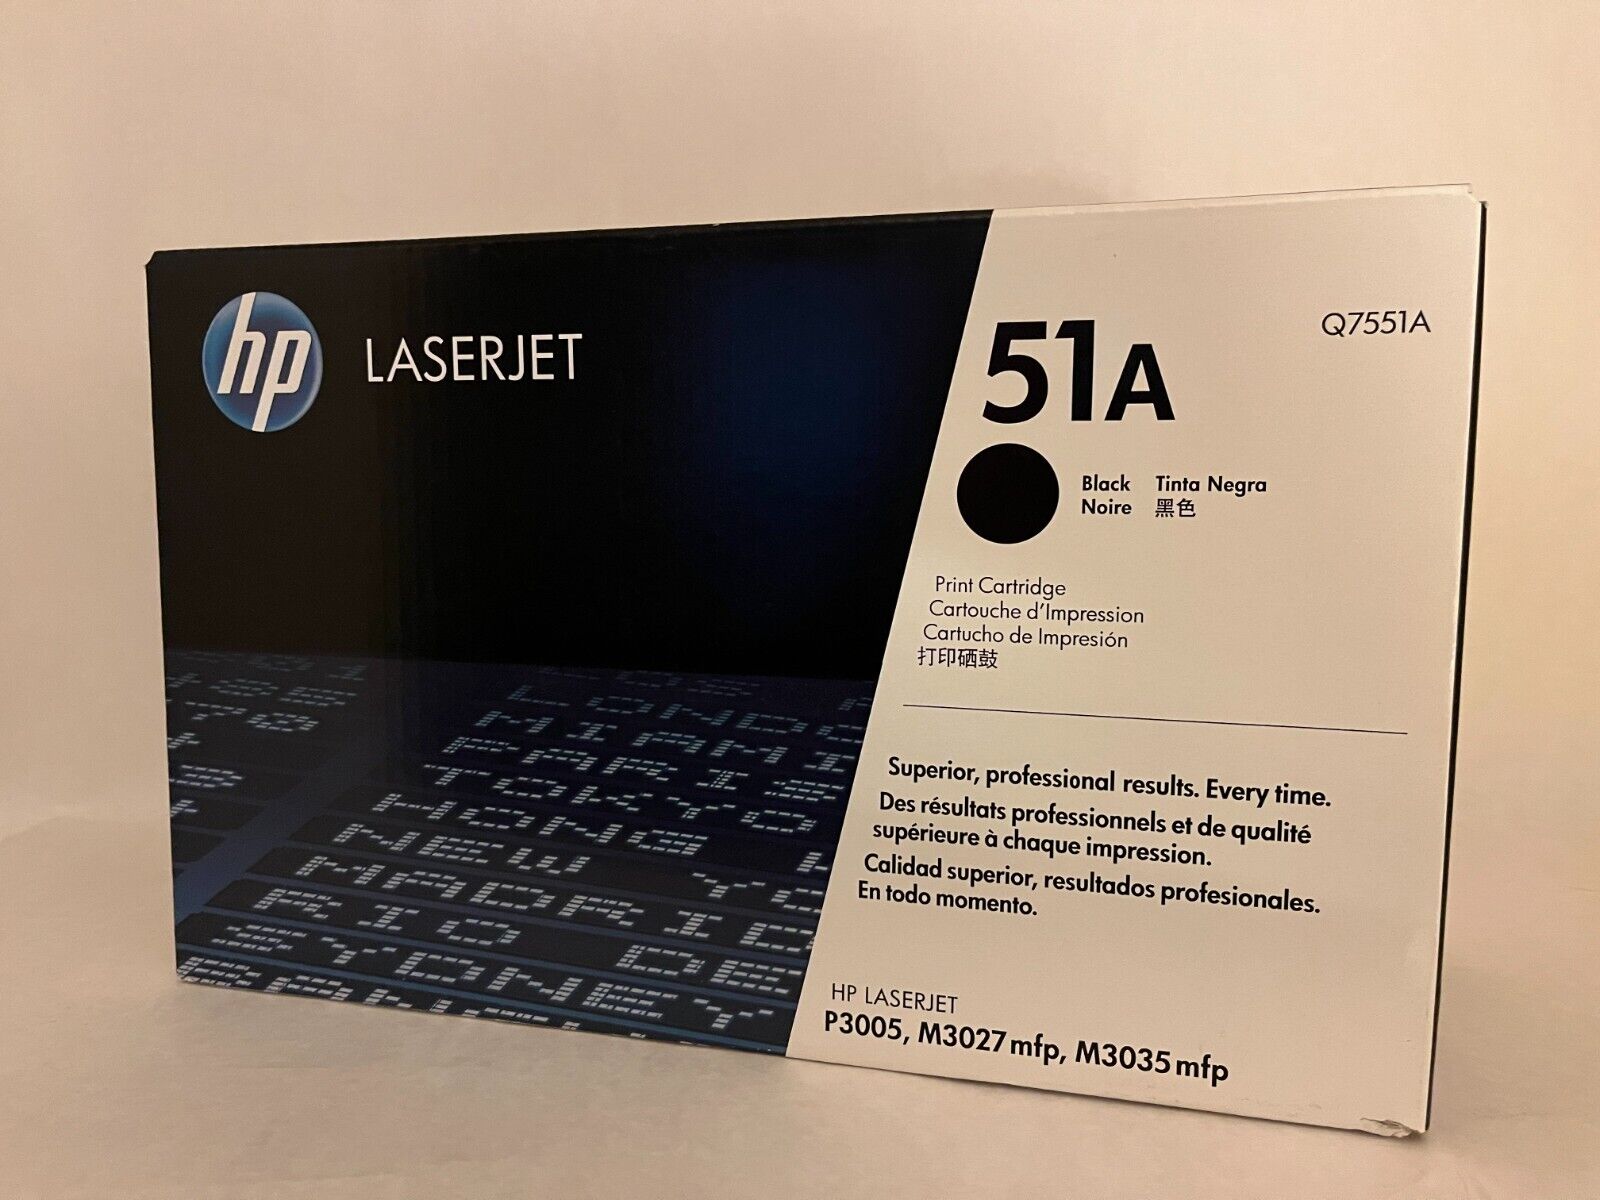 NEW OEM Genuine HP LaserJet 51A Q7551A Black Toner - Sealed